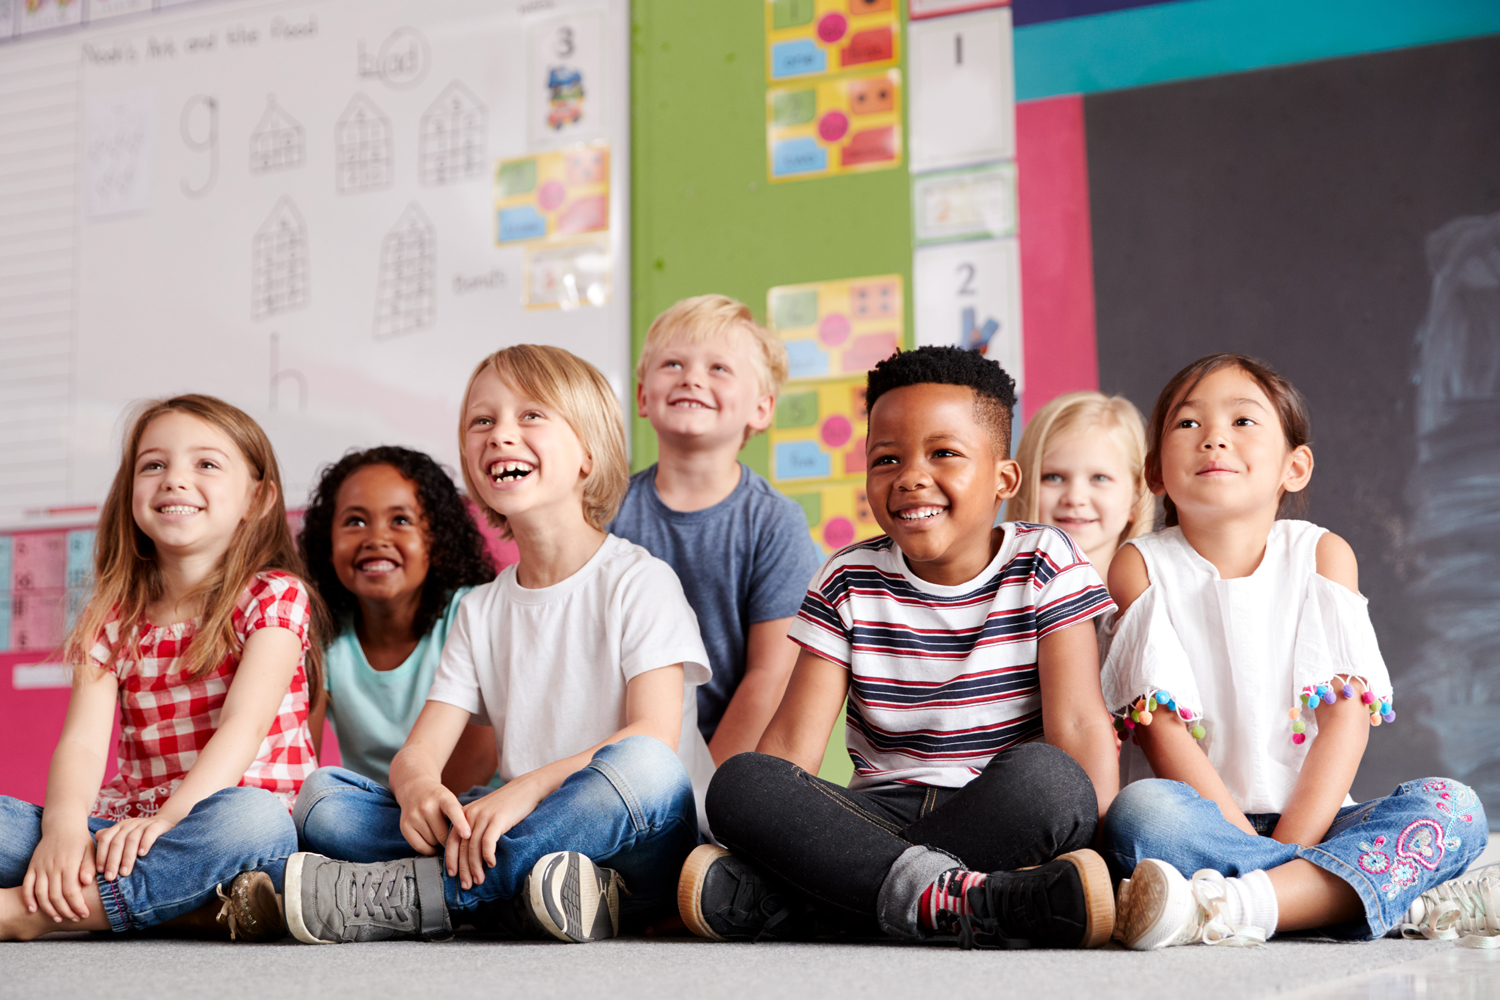 Leende grupp barn i 5-6 års ålder på en förskola